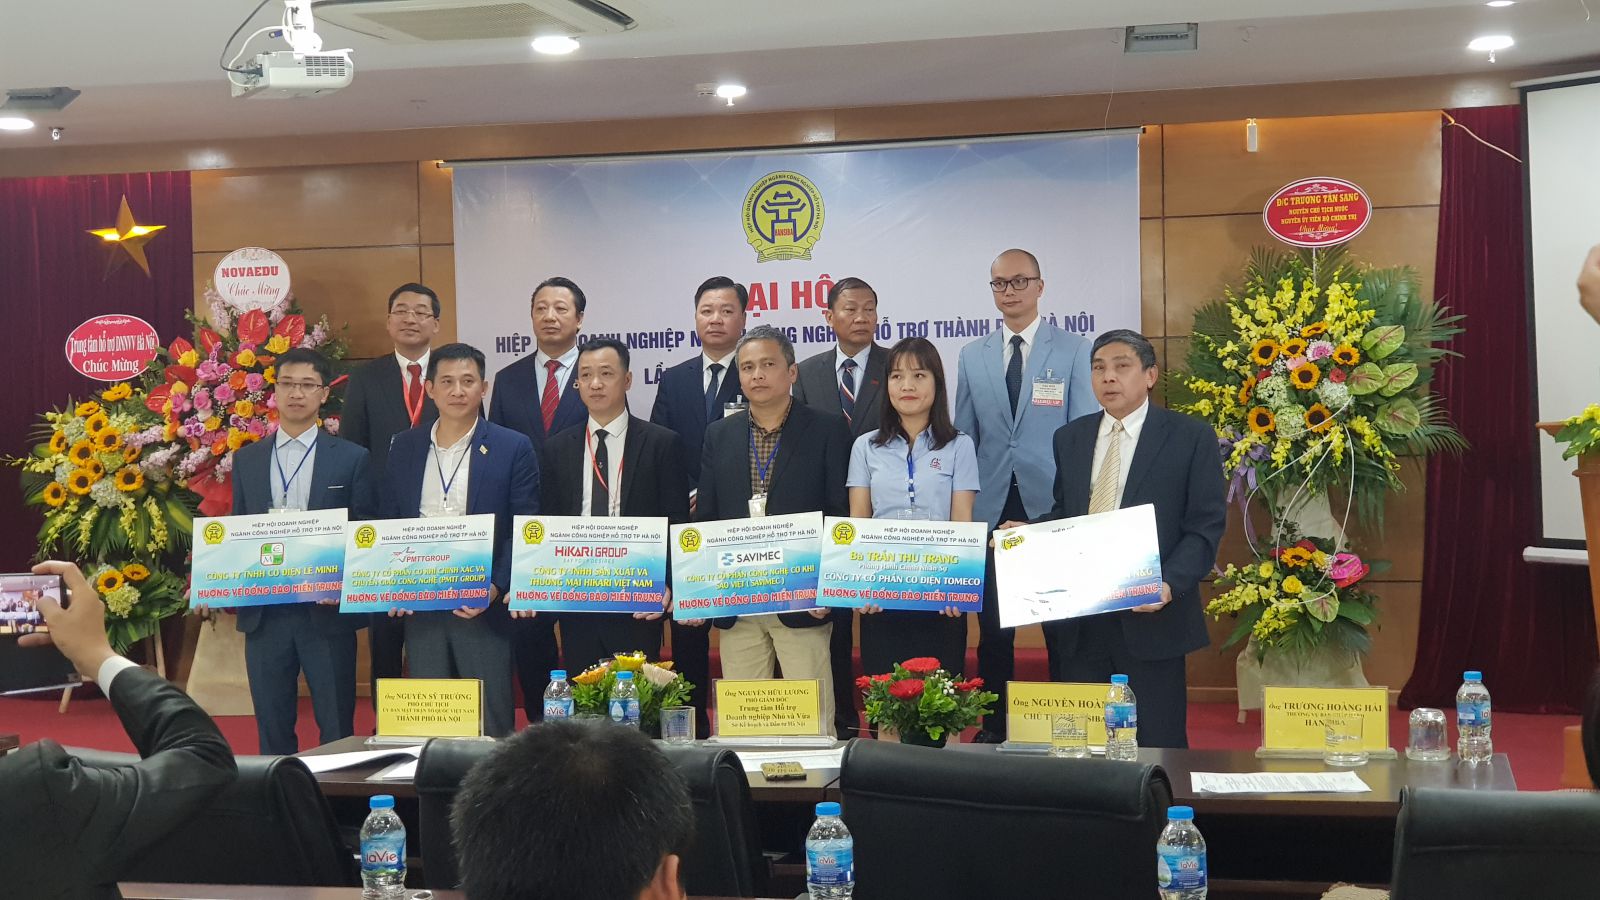 Các doanh nghiệp ủng hộ miền Trung bị thiên tai, đặc biệt Tập đoàn N&G (N&G GROUP) đã trao tặng 1 tỷ đồng cho Chương trình 500.000 áo phao tới ngư dân Việt Nam.